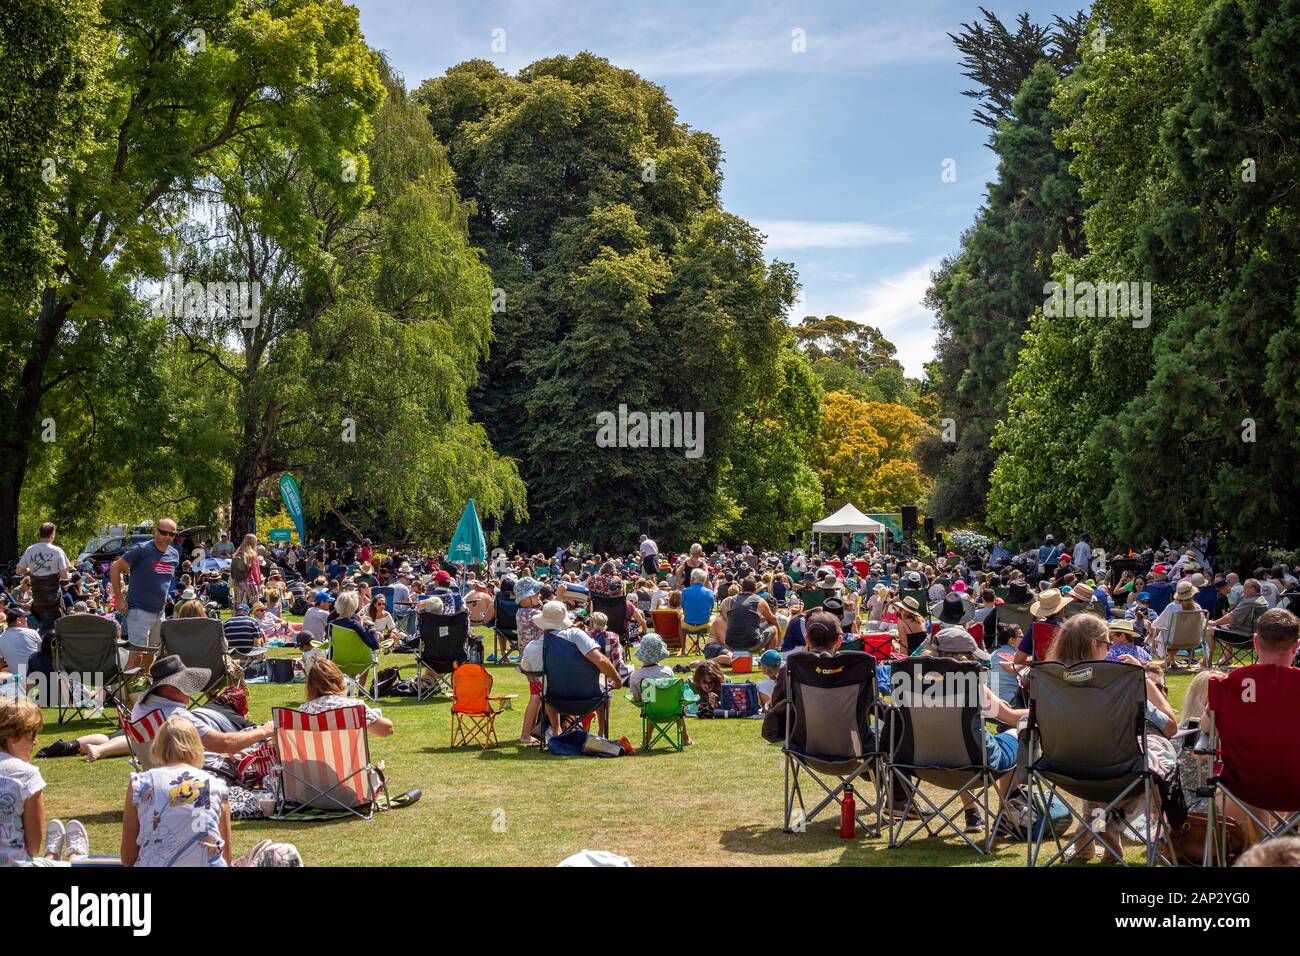 Christchurch, Canterbury, Nouvelle-Zélande, 01/19/2020 : Les gens de tous âges se rassemblent dans un parc de la ville pour un événement musical d'été public Banque D'Images